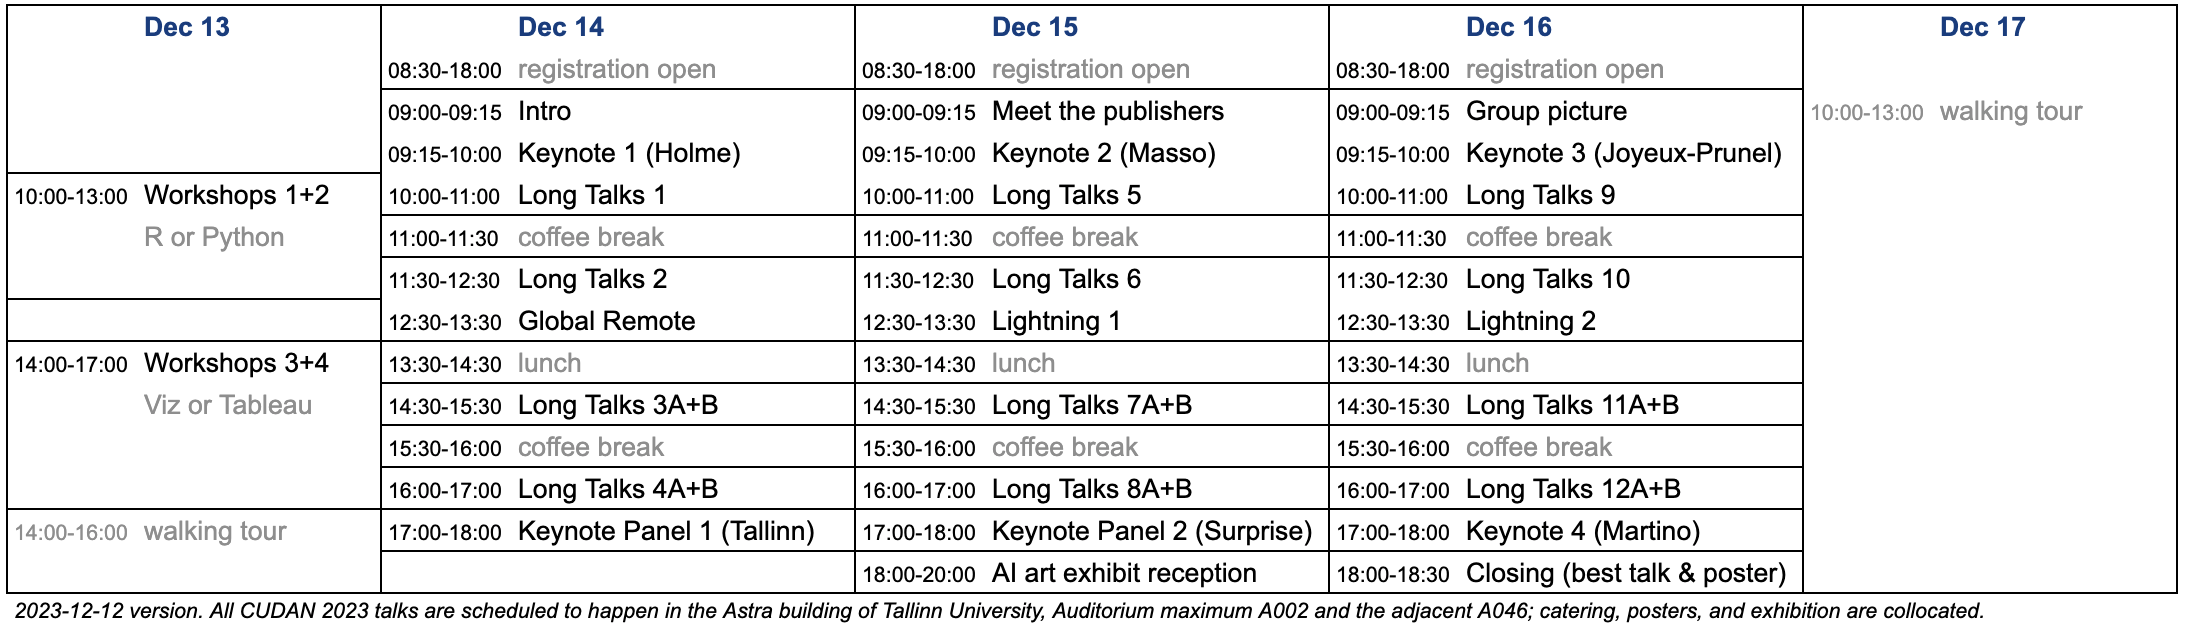 CUDAN 2023 Conference schedule (image)